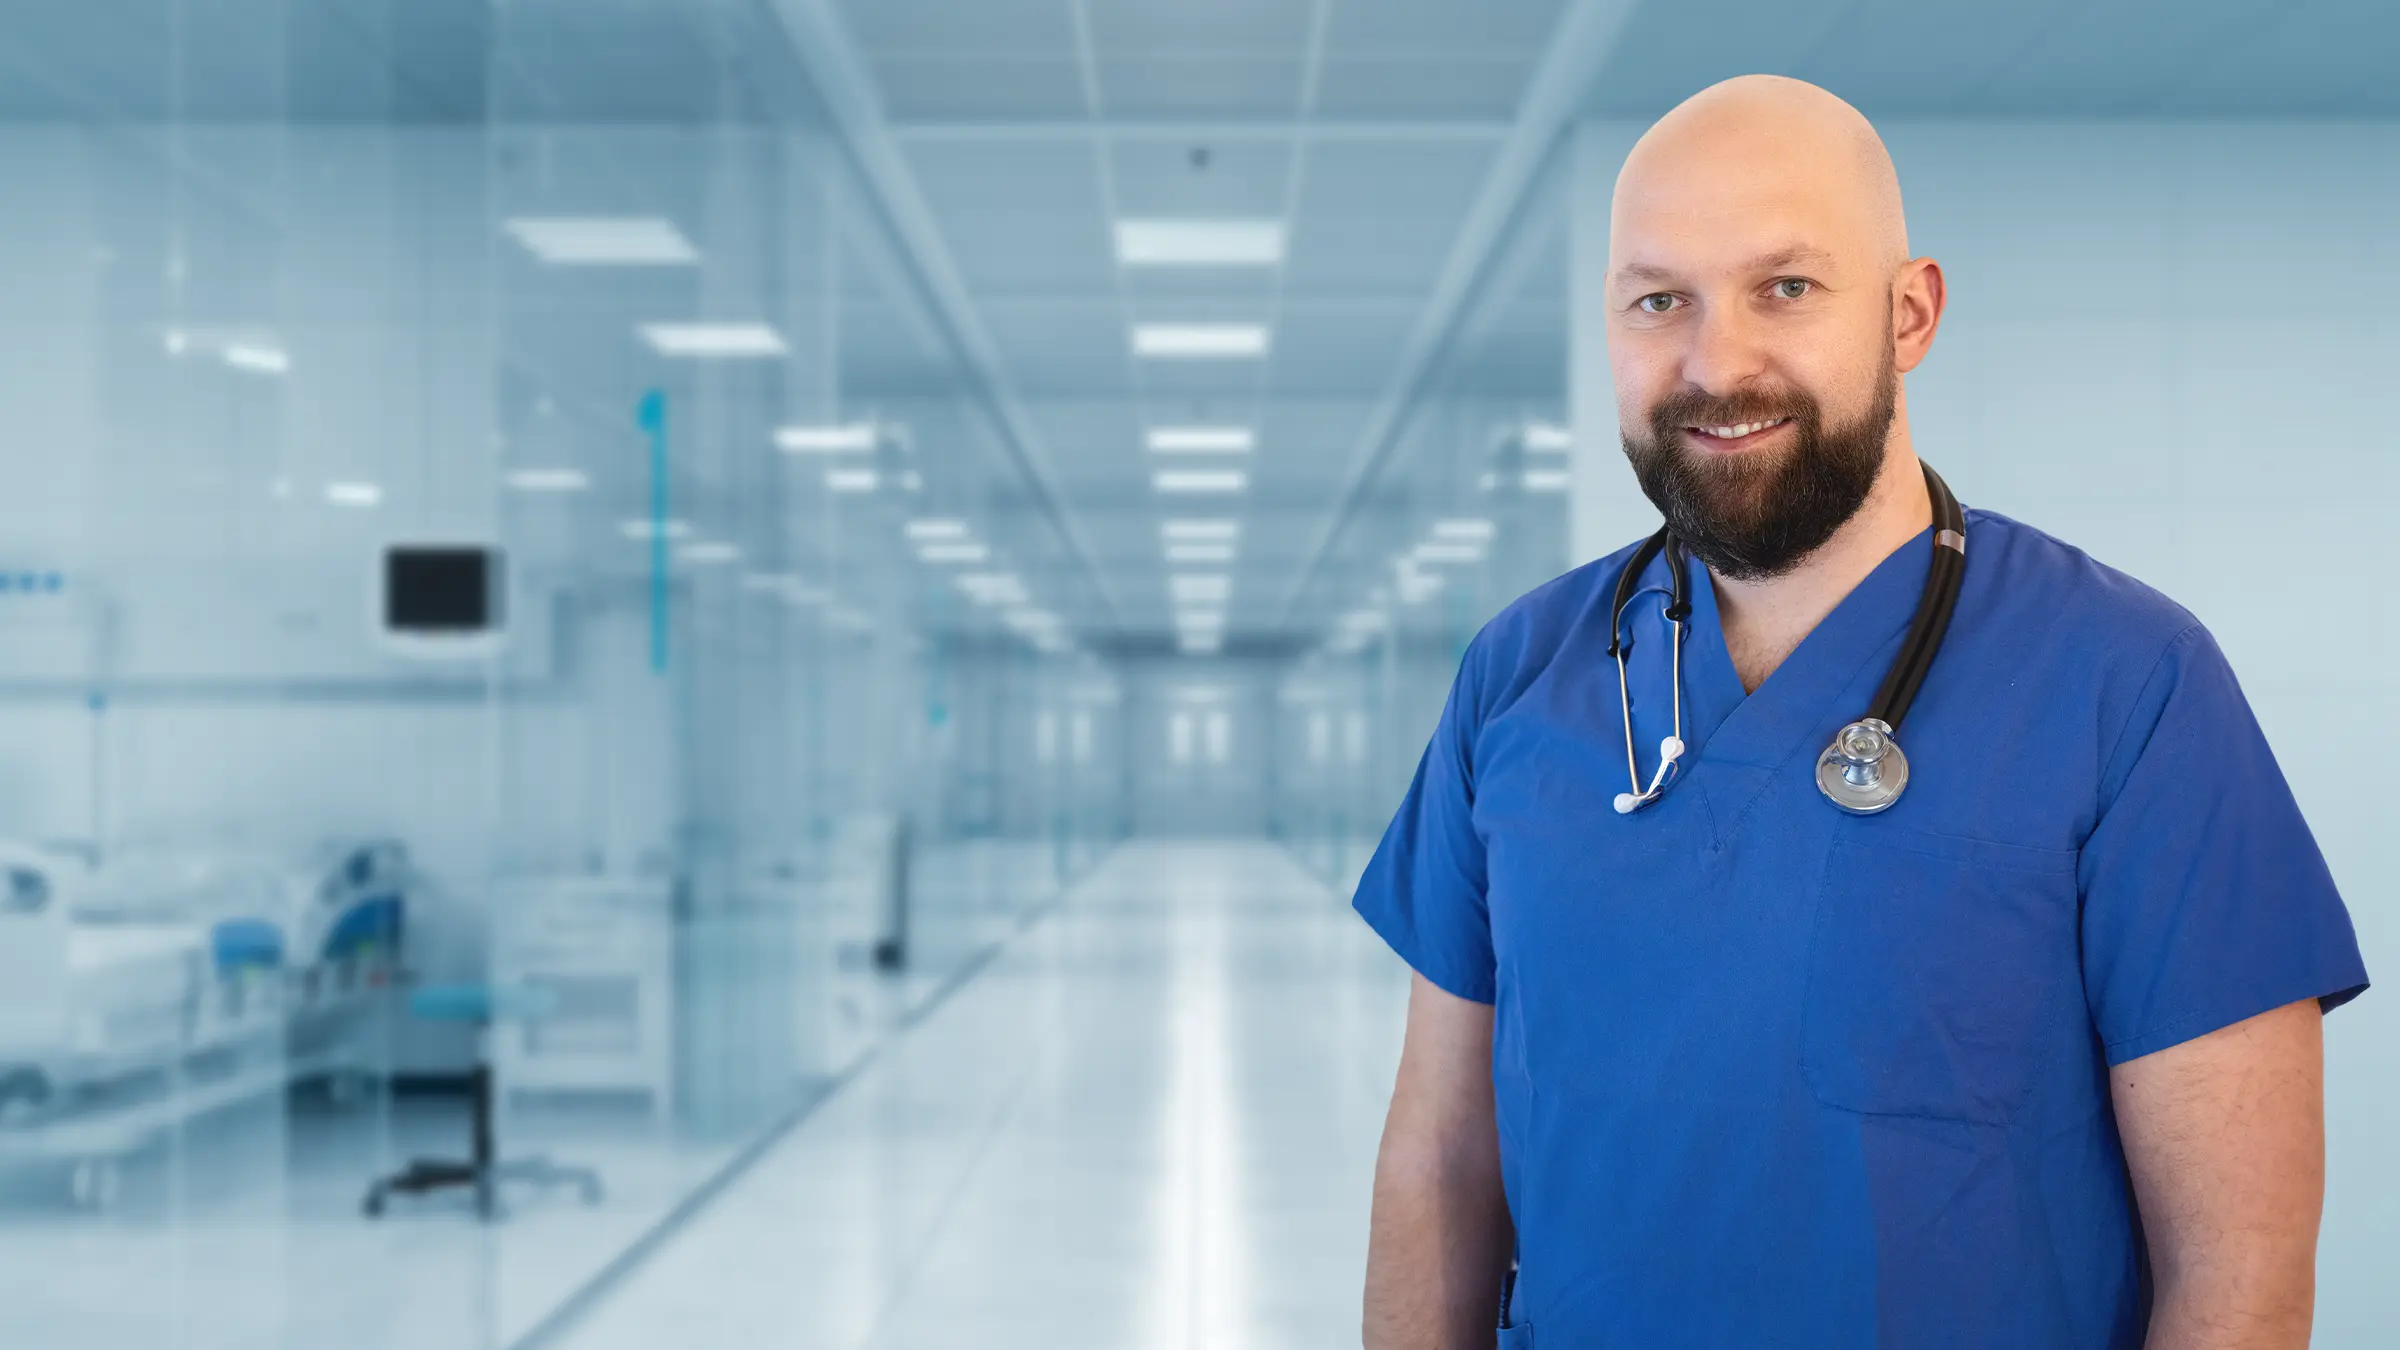 Alex Kantor als Fachkrankenpfleger für Intensivmedizin